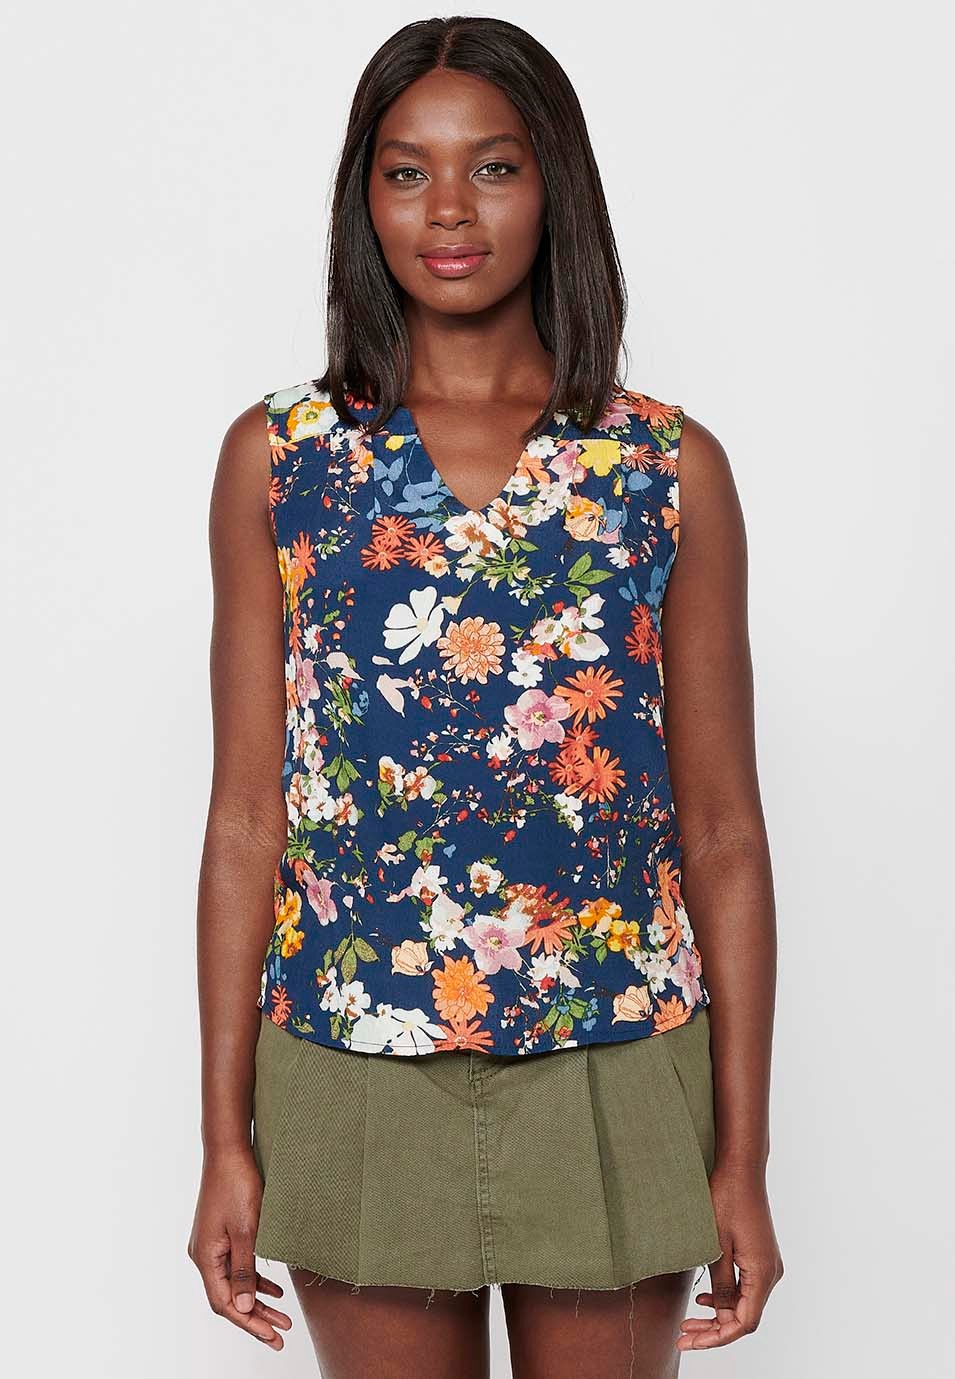 Chemisier sans manches pour femmes, imprimé Floral multicolore, fermeture sur le devant, Style chemise